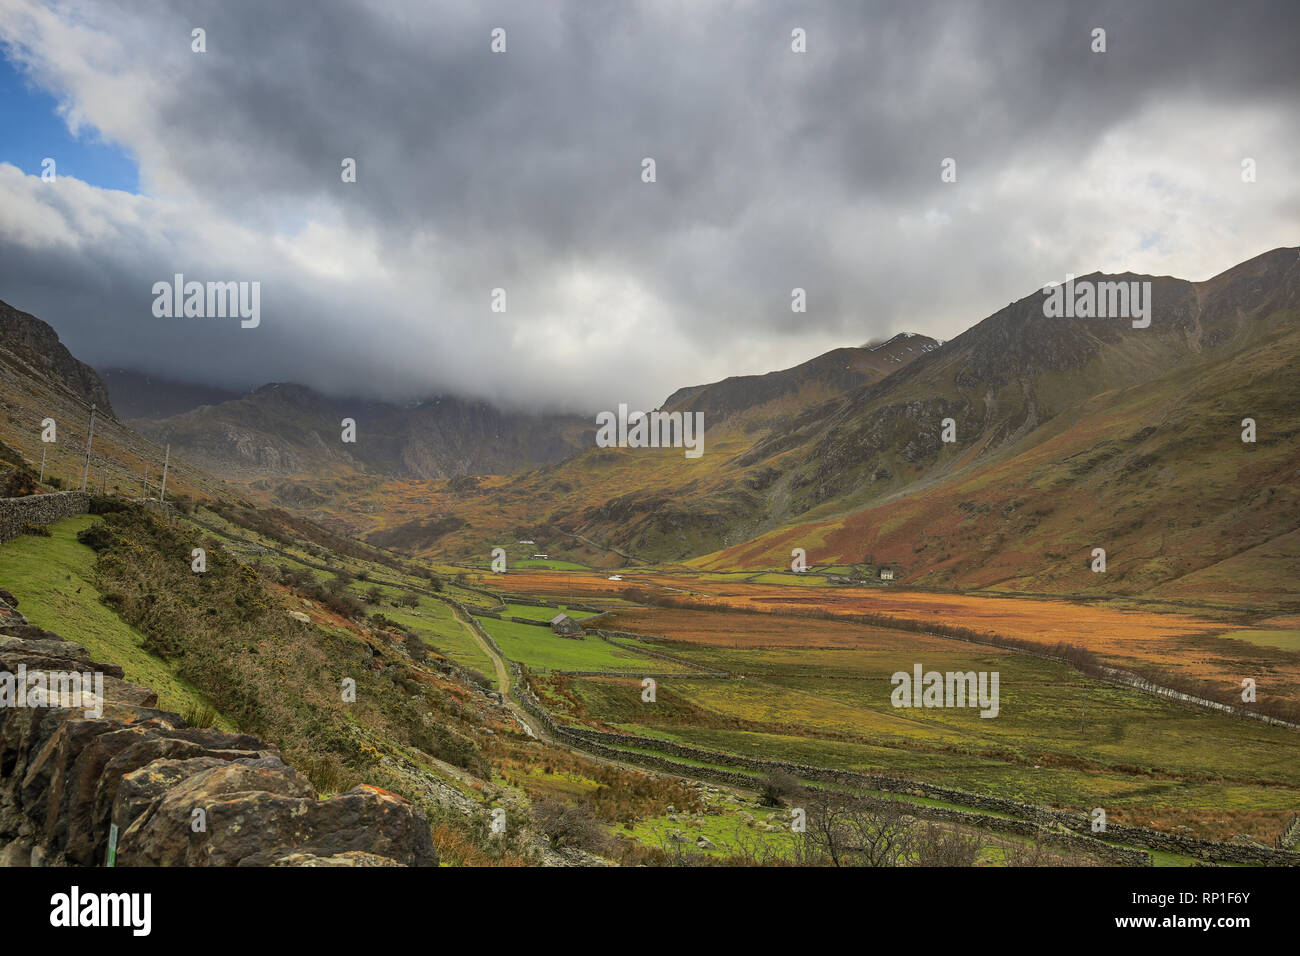 Icónica fotografía clásica, con vistas al paisaje de verde valle galés (desde A5) con las montañas de los alrededores del Parque Nacional de Snowdonia y por encima de las nubes tormentosas. Foto de stock